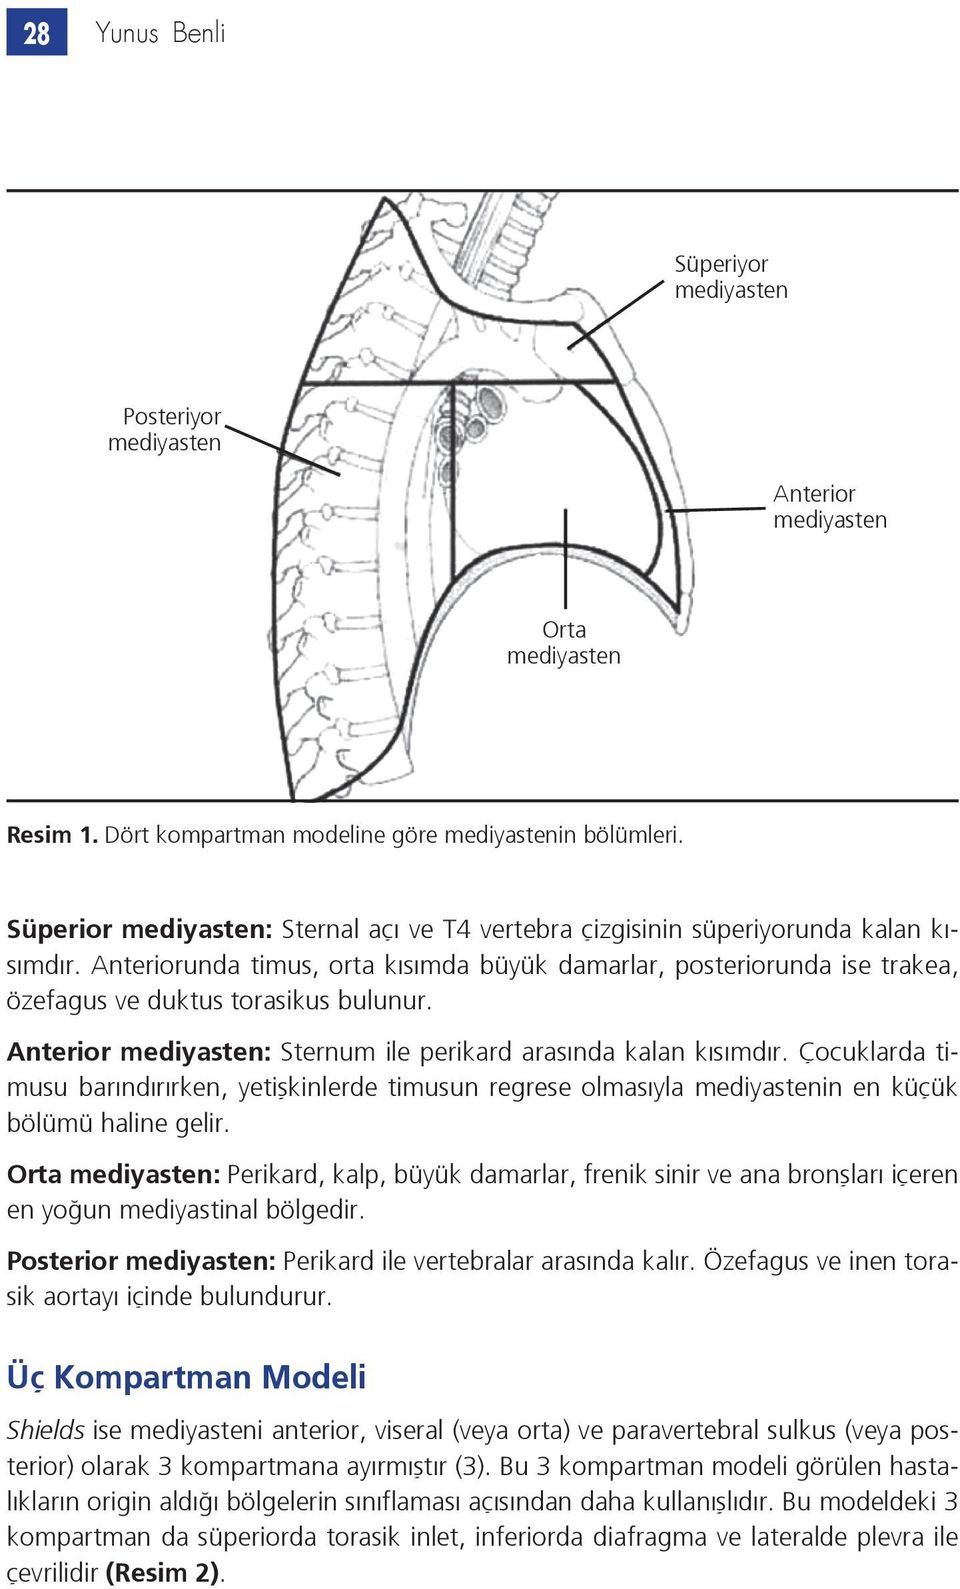 Anteriorunda timus, orta kısımda büyük damarlar, posteriorunda ise trakea, özefagus ve duktus torasikus bulunur. Anterior mediyasten: Sternum ile perikard arasında kalan kısımdır.